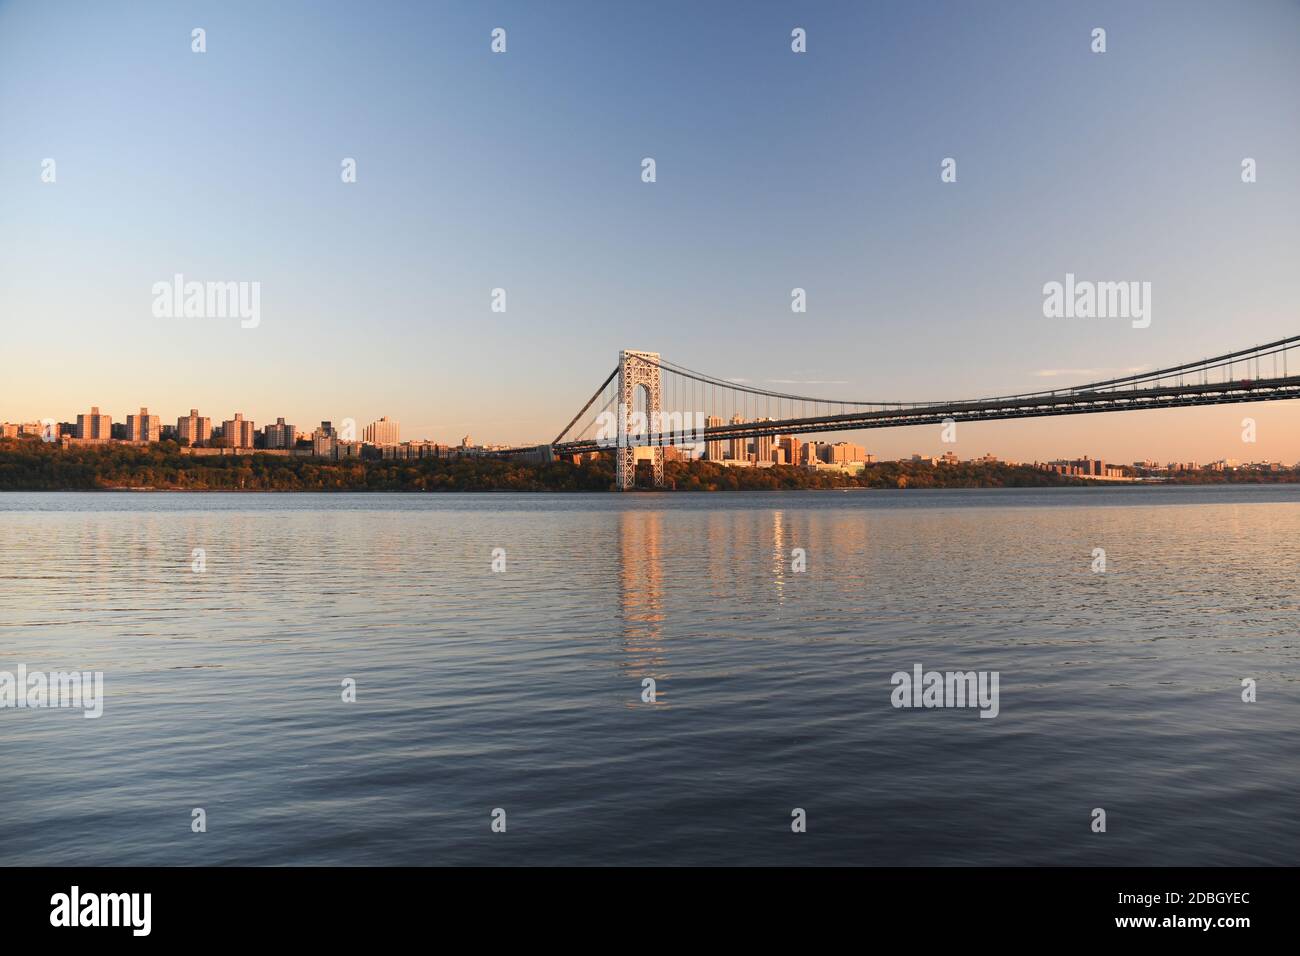 CORTINA D'ACCIAIO: VOLUME 2: Il George Washington Bridge è la stella di molti splendidi paesaggi sopraelevati lungo il fiume Hudson, nelle Palisades of NJ Foto Stock